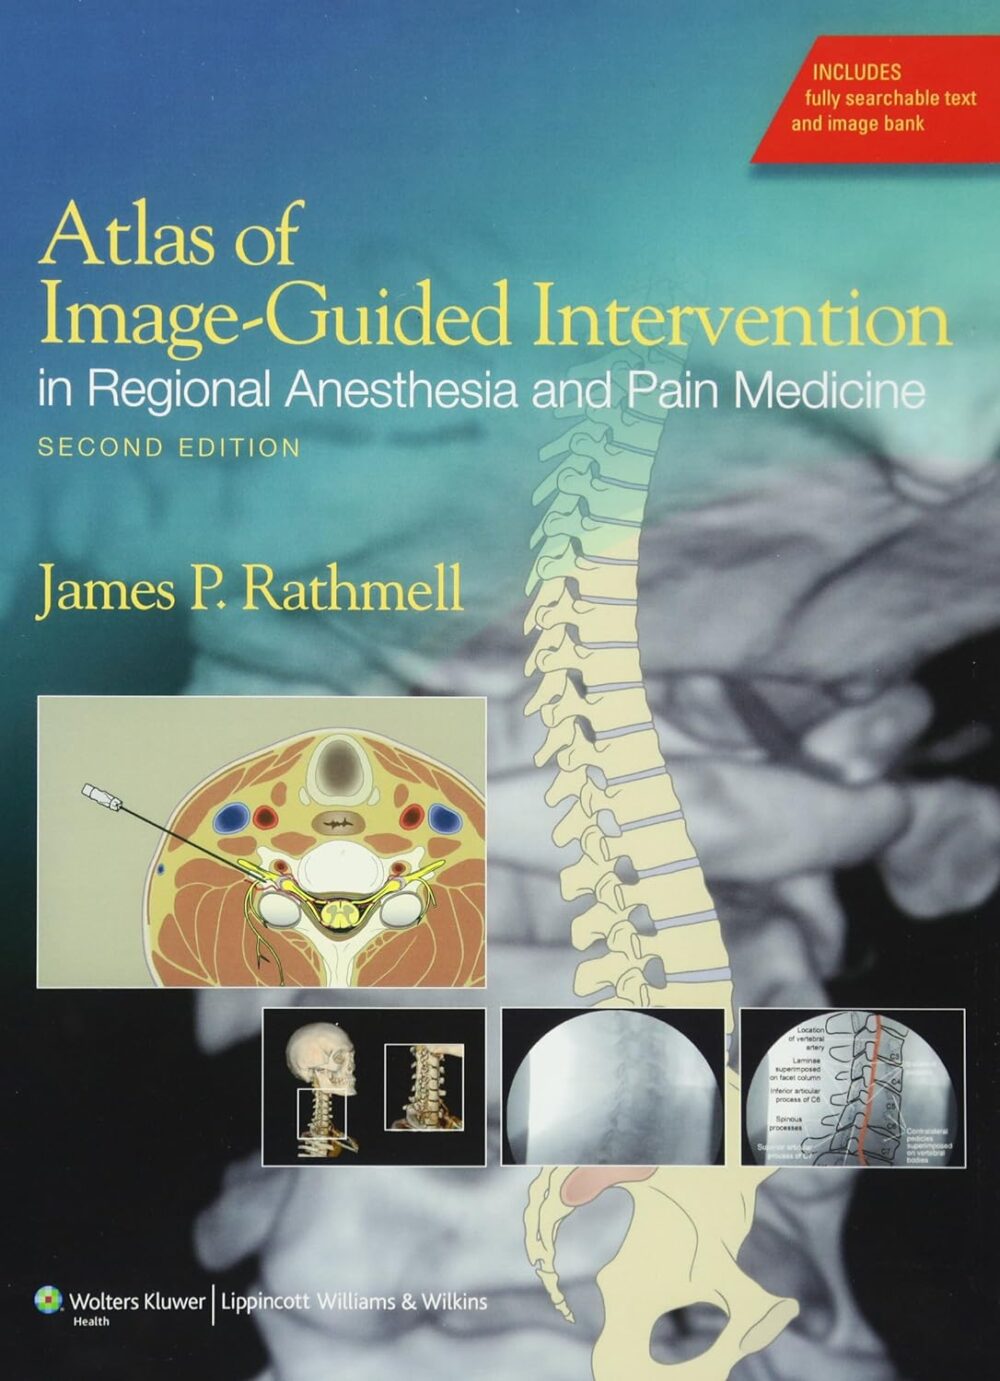 Atlas de intervenção guiada por imagem em anestesia regional e medicina da dor, segunda edição